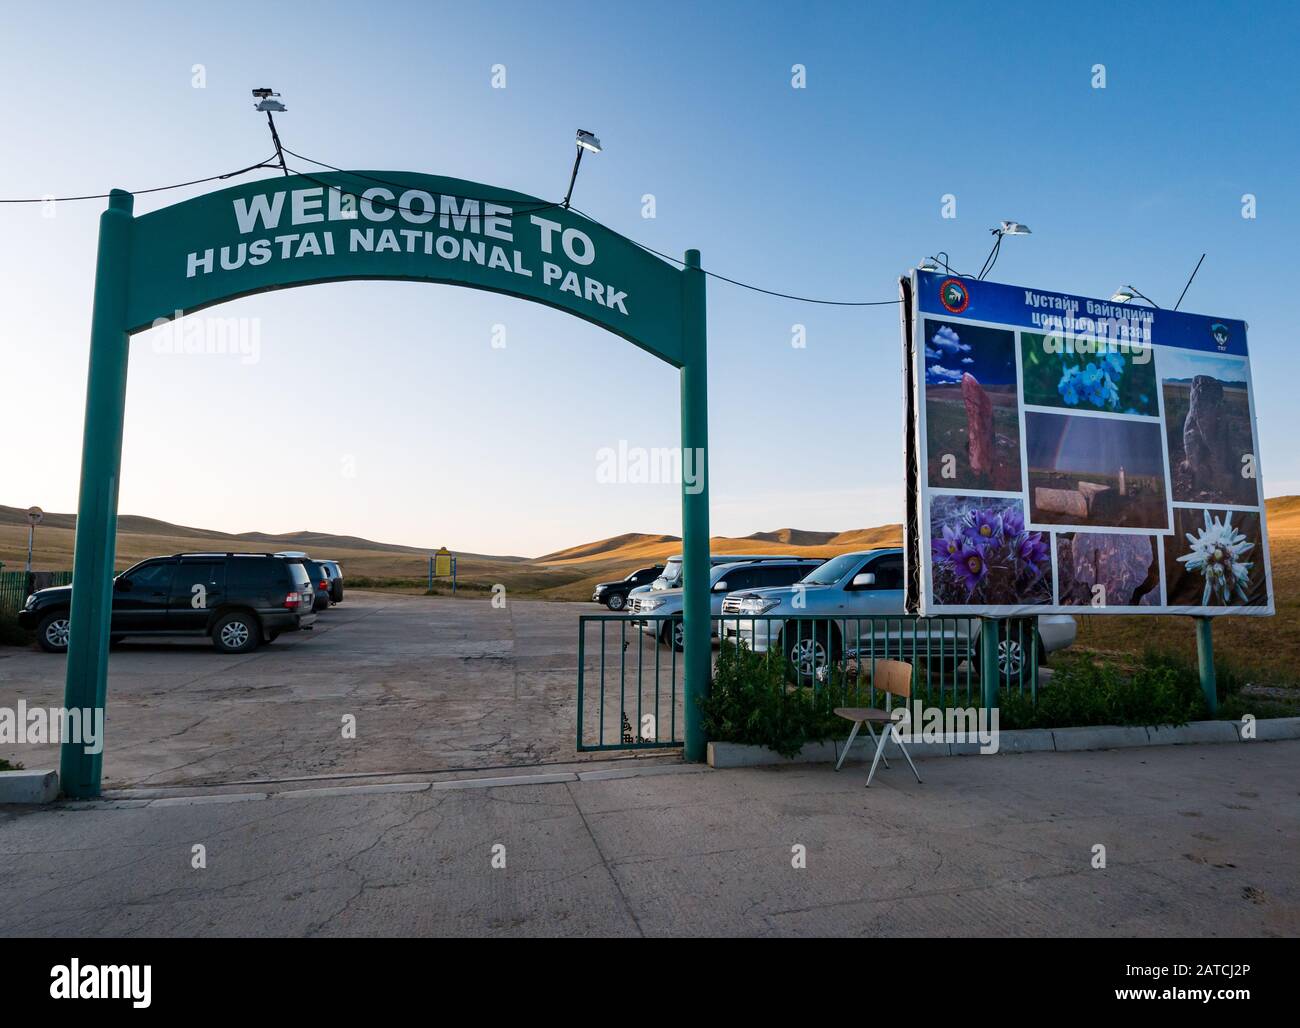 Willkommensschild am Eingang zum Naturschutzgebiet Hustai oder Khustain Nuruu National Park, Provinz Tov, Mongolia, Asien Stockfoto